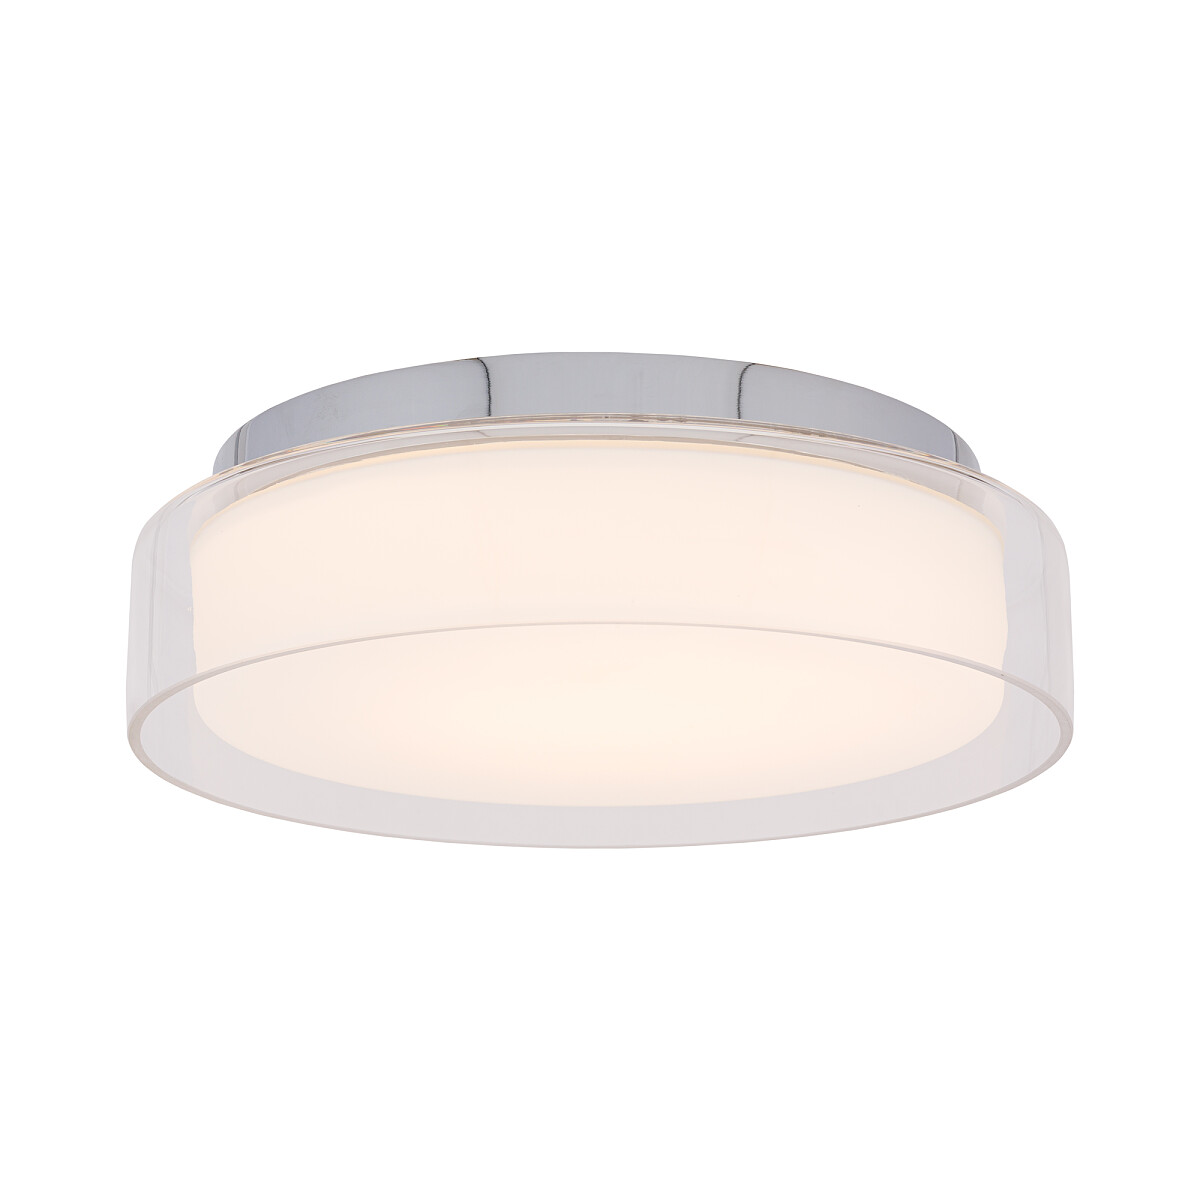 NOWODVORSKI PAN LED S 8173 lampa wewnętrzna sufitowa plafon